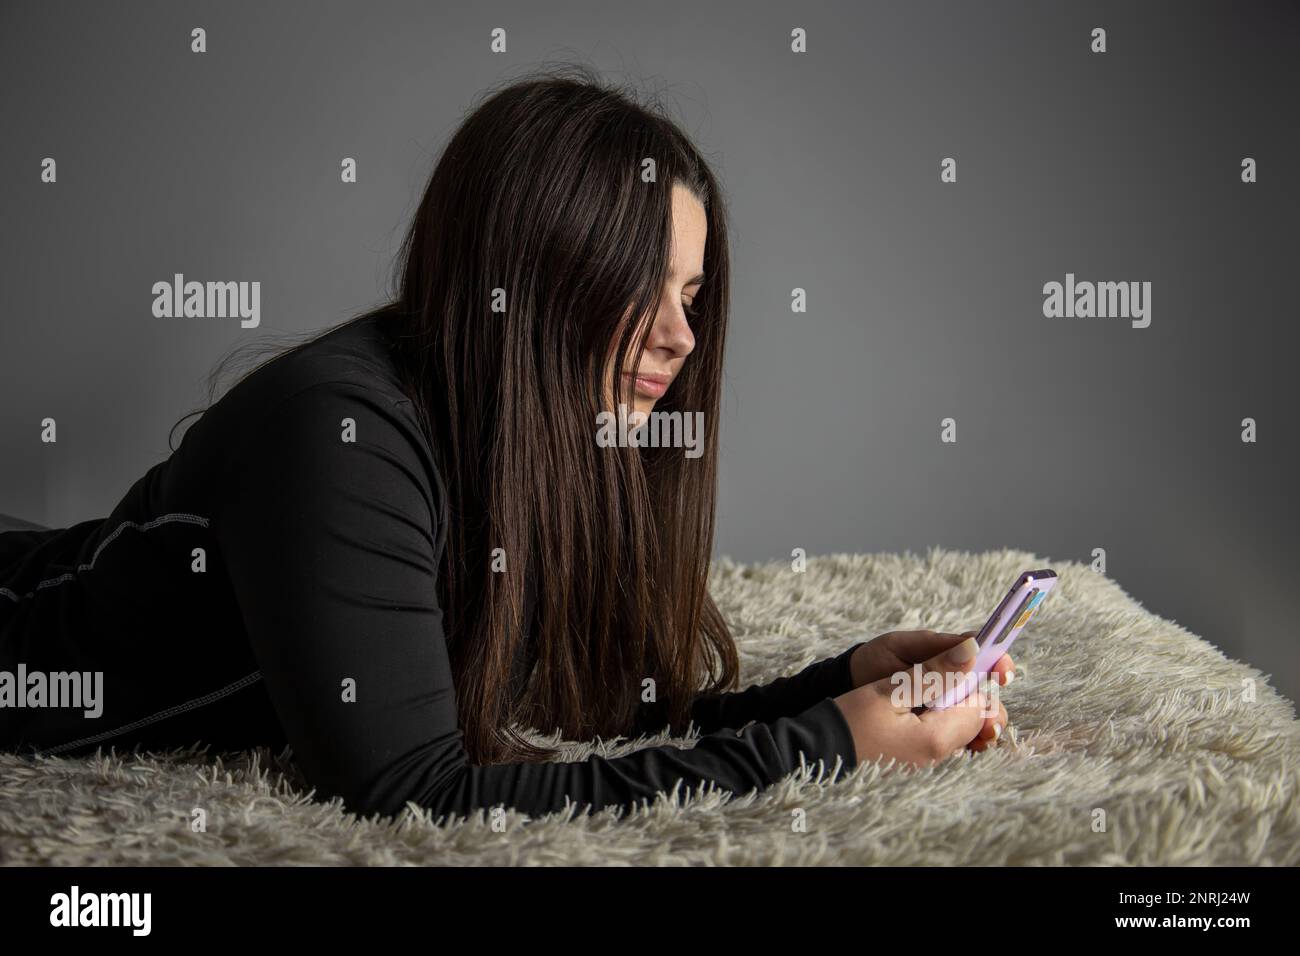 Una bella ragazza è sdraiata sul letto con un telefono cellulare. Foto Stock